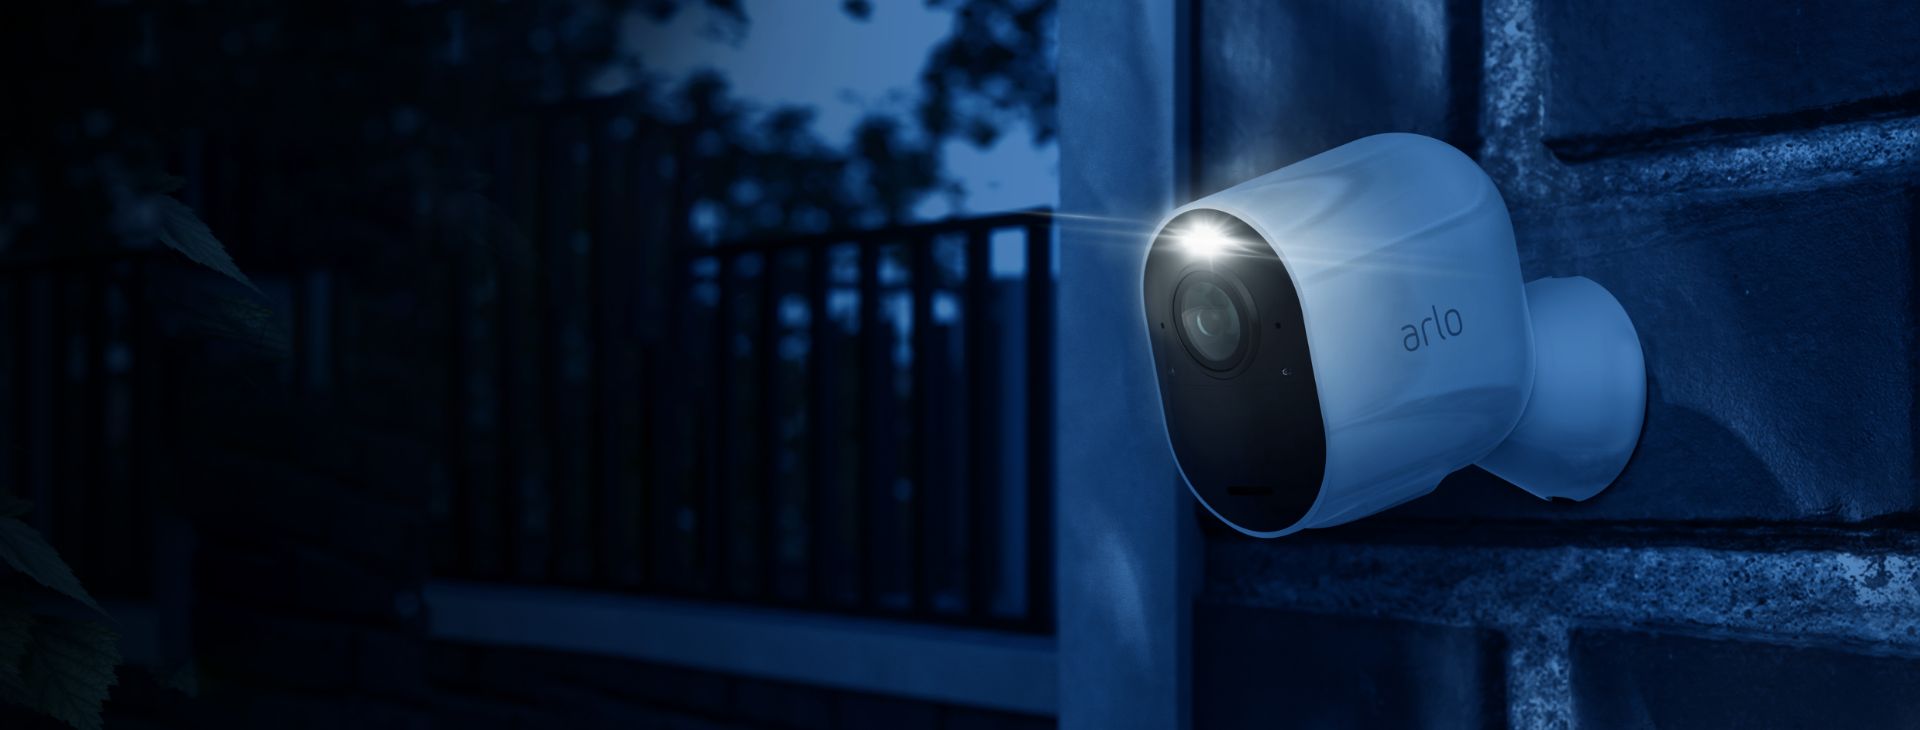 De Arlo Ultra bewakingscamera voor aan de muur die filmt in het donker met zijn ingebouwde spotlight.